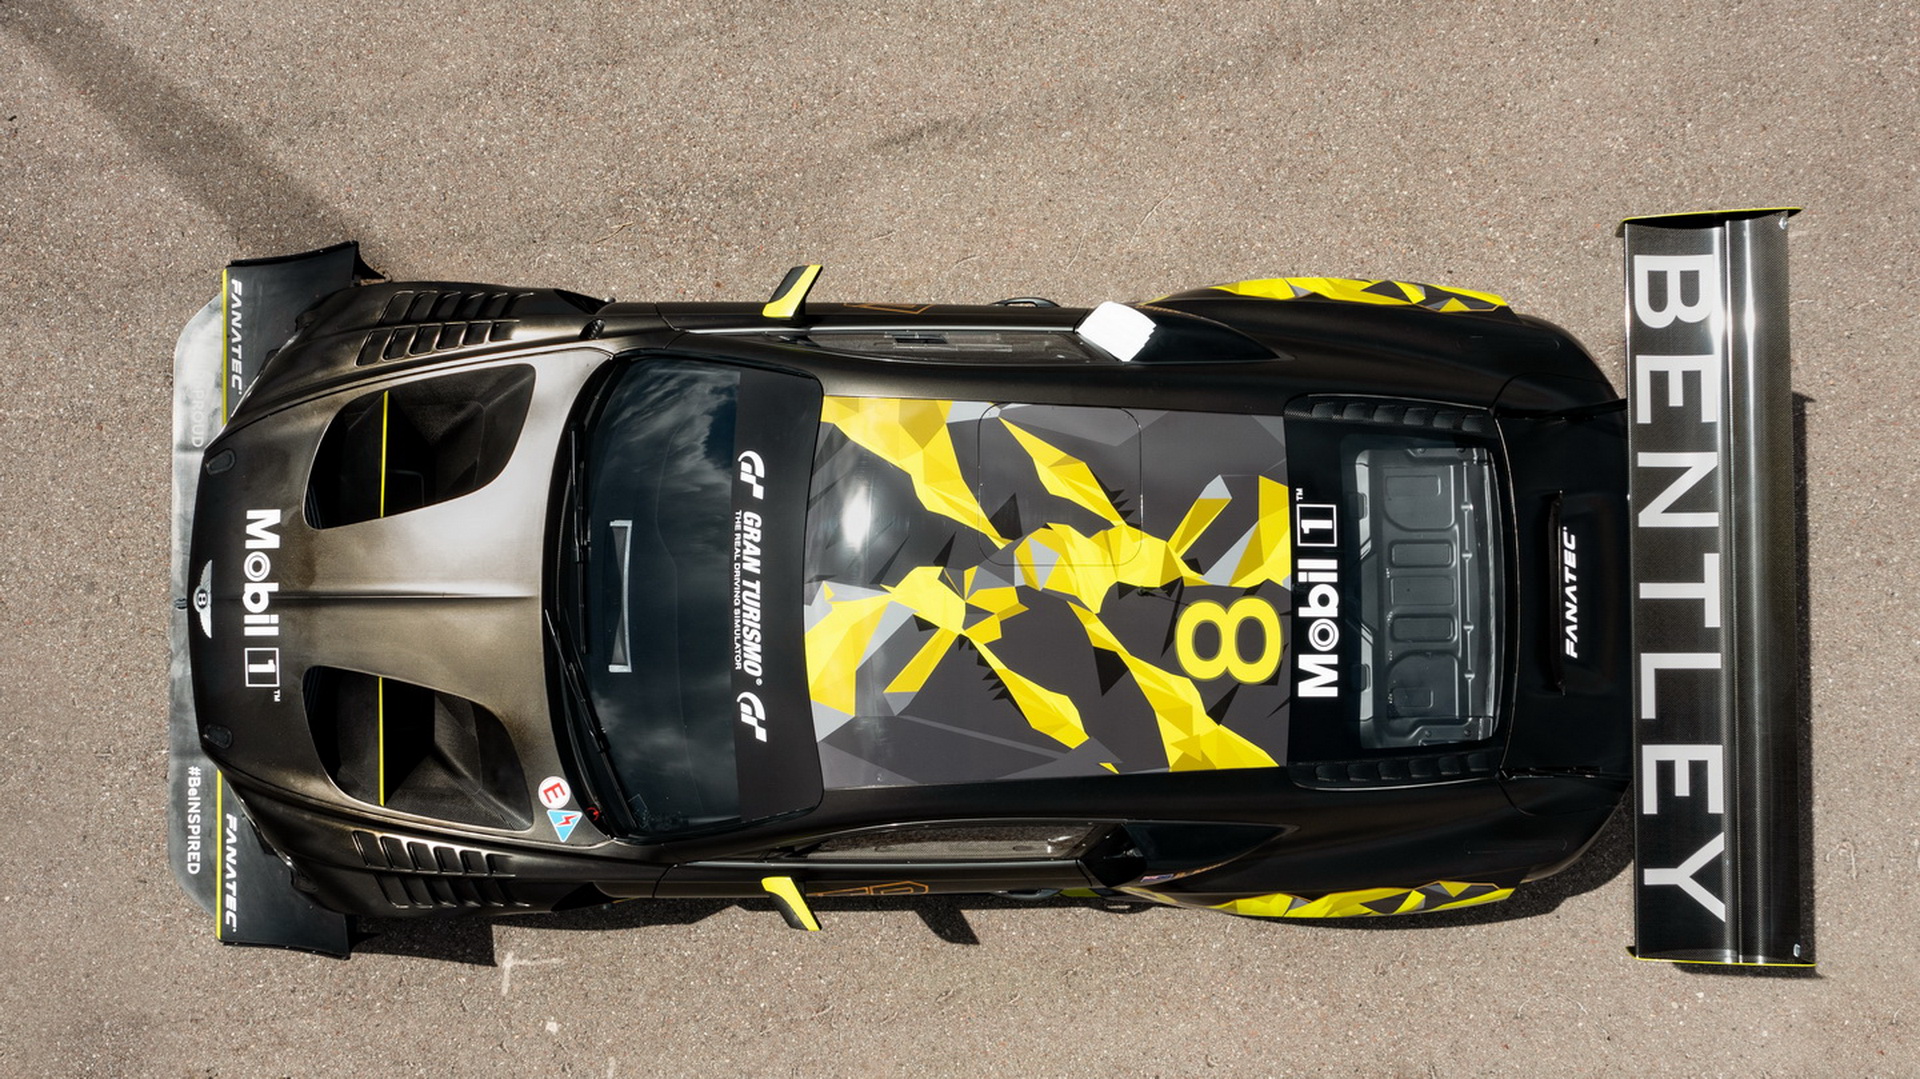 Continental GT3 Pikes Peak проходит финальные тестирования